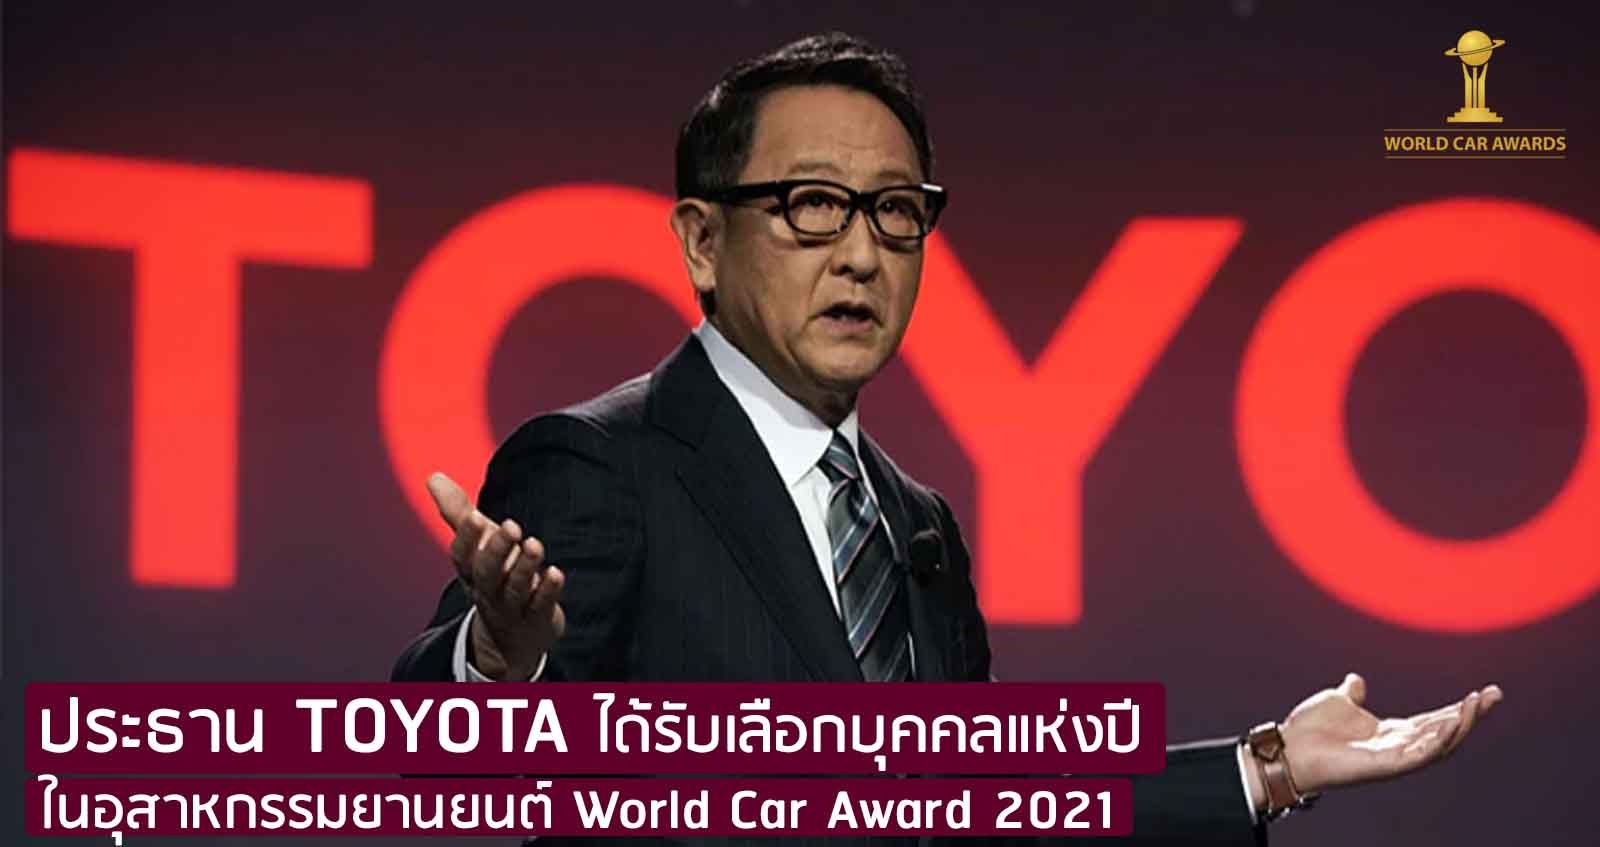 ประธาน TOYOTA ได้รับเลือกบุคคลแห่งปีในอุสาหกรรมยานยนต์ World Car Award 2021